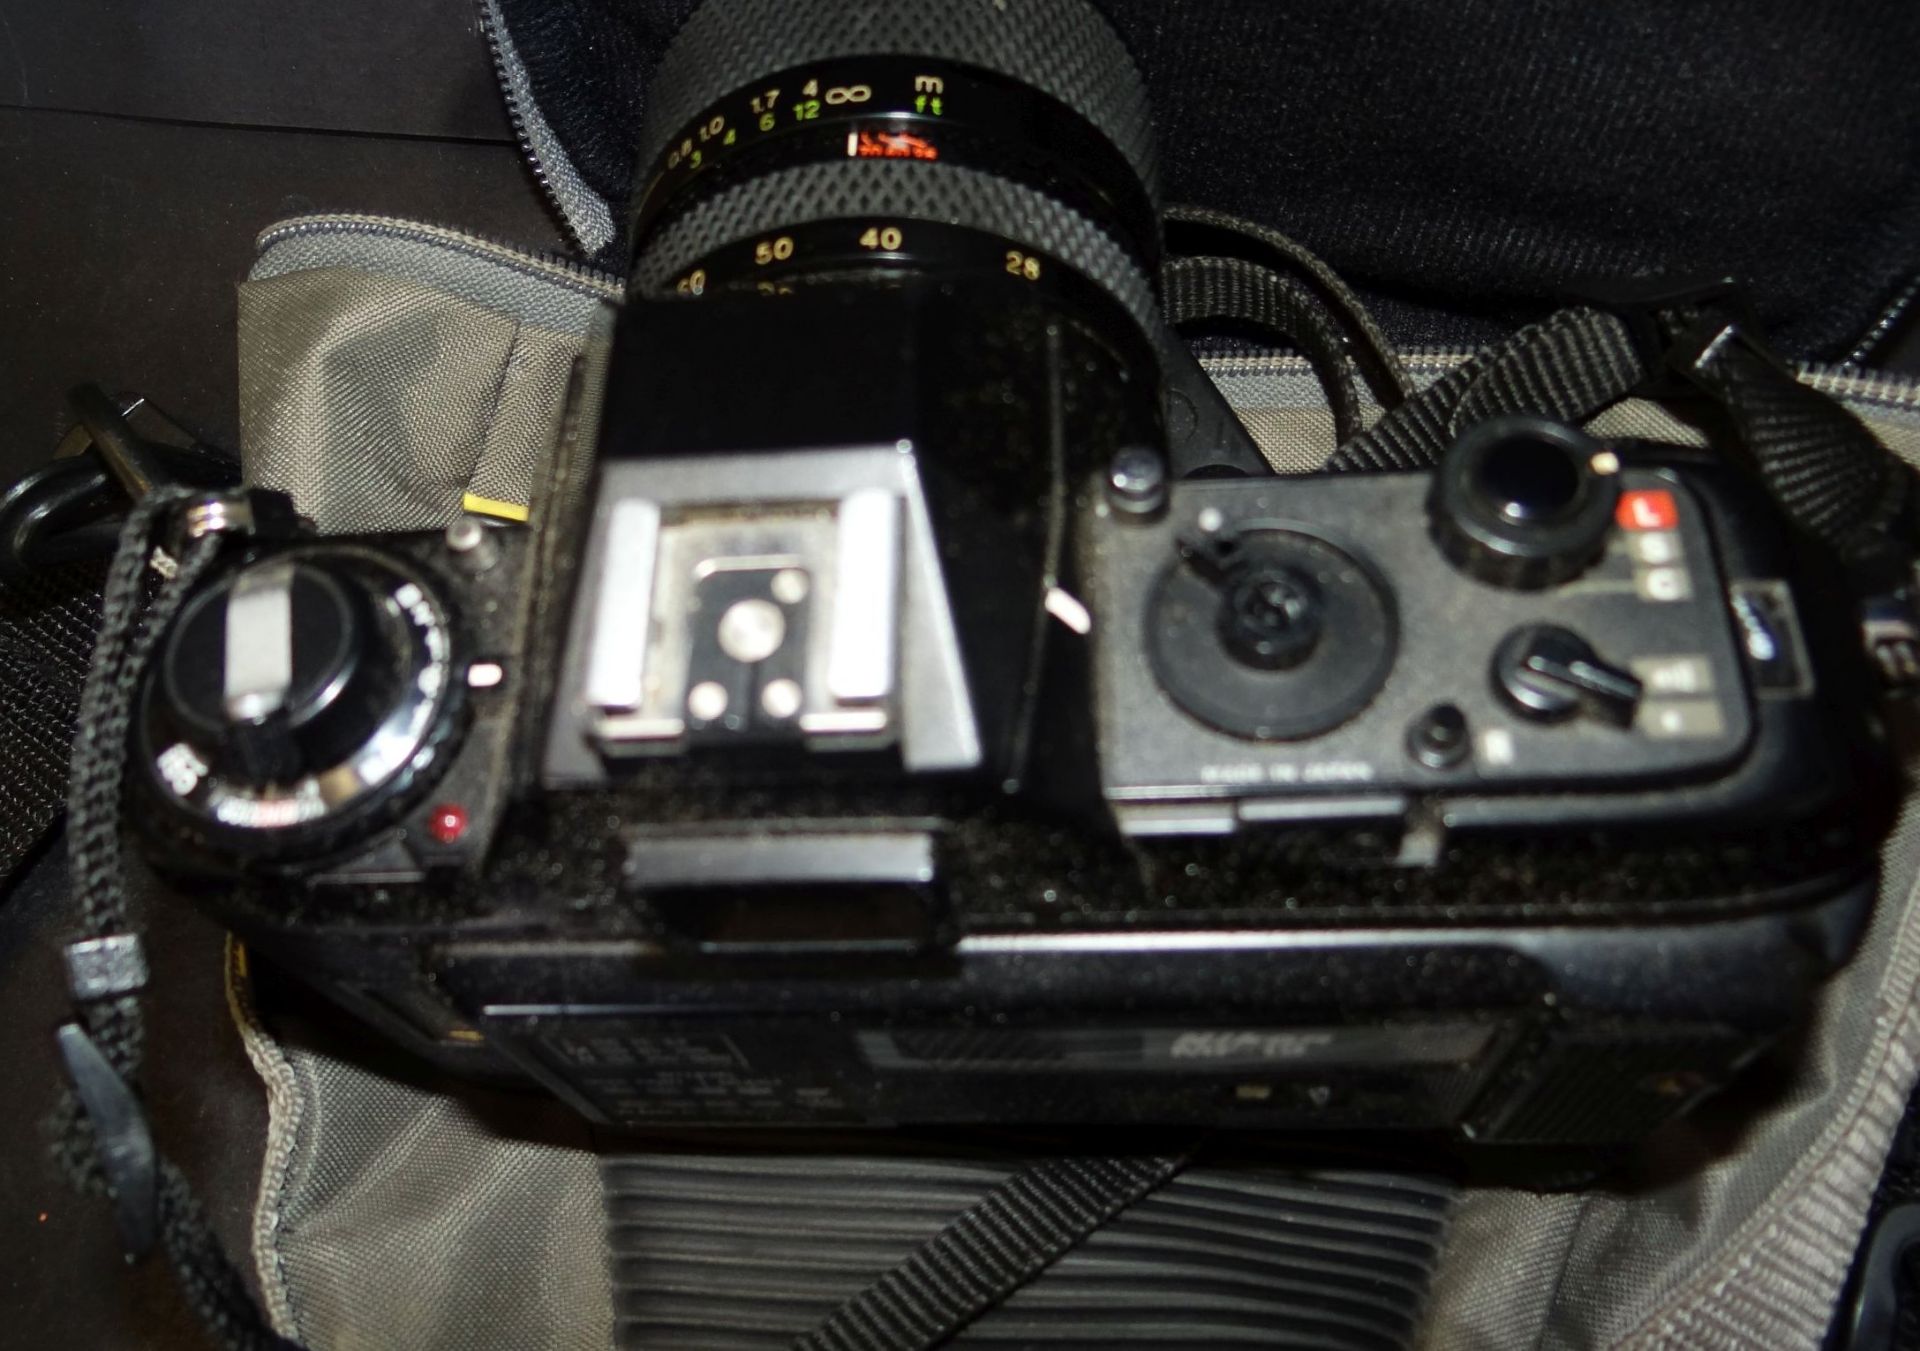 Fotoapparat NIKON F-301 mit Tasche, eine Skalenanzeige lose - Bild 3 aus 4